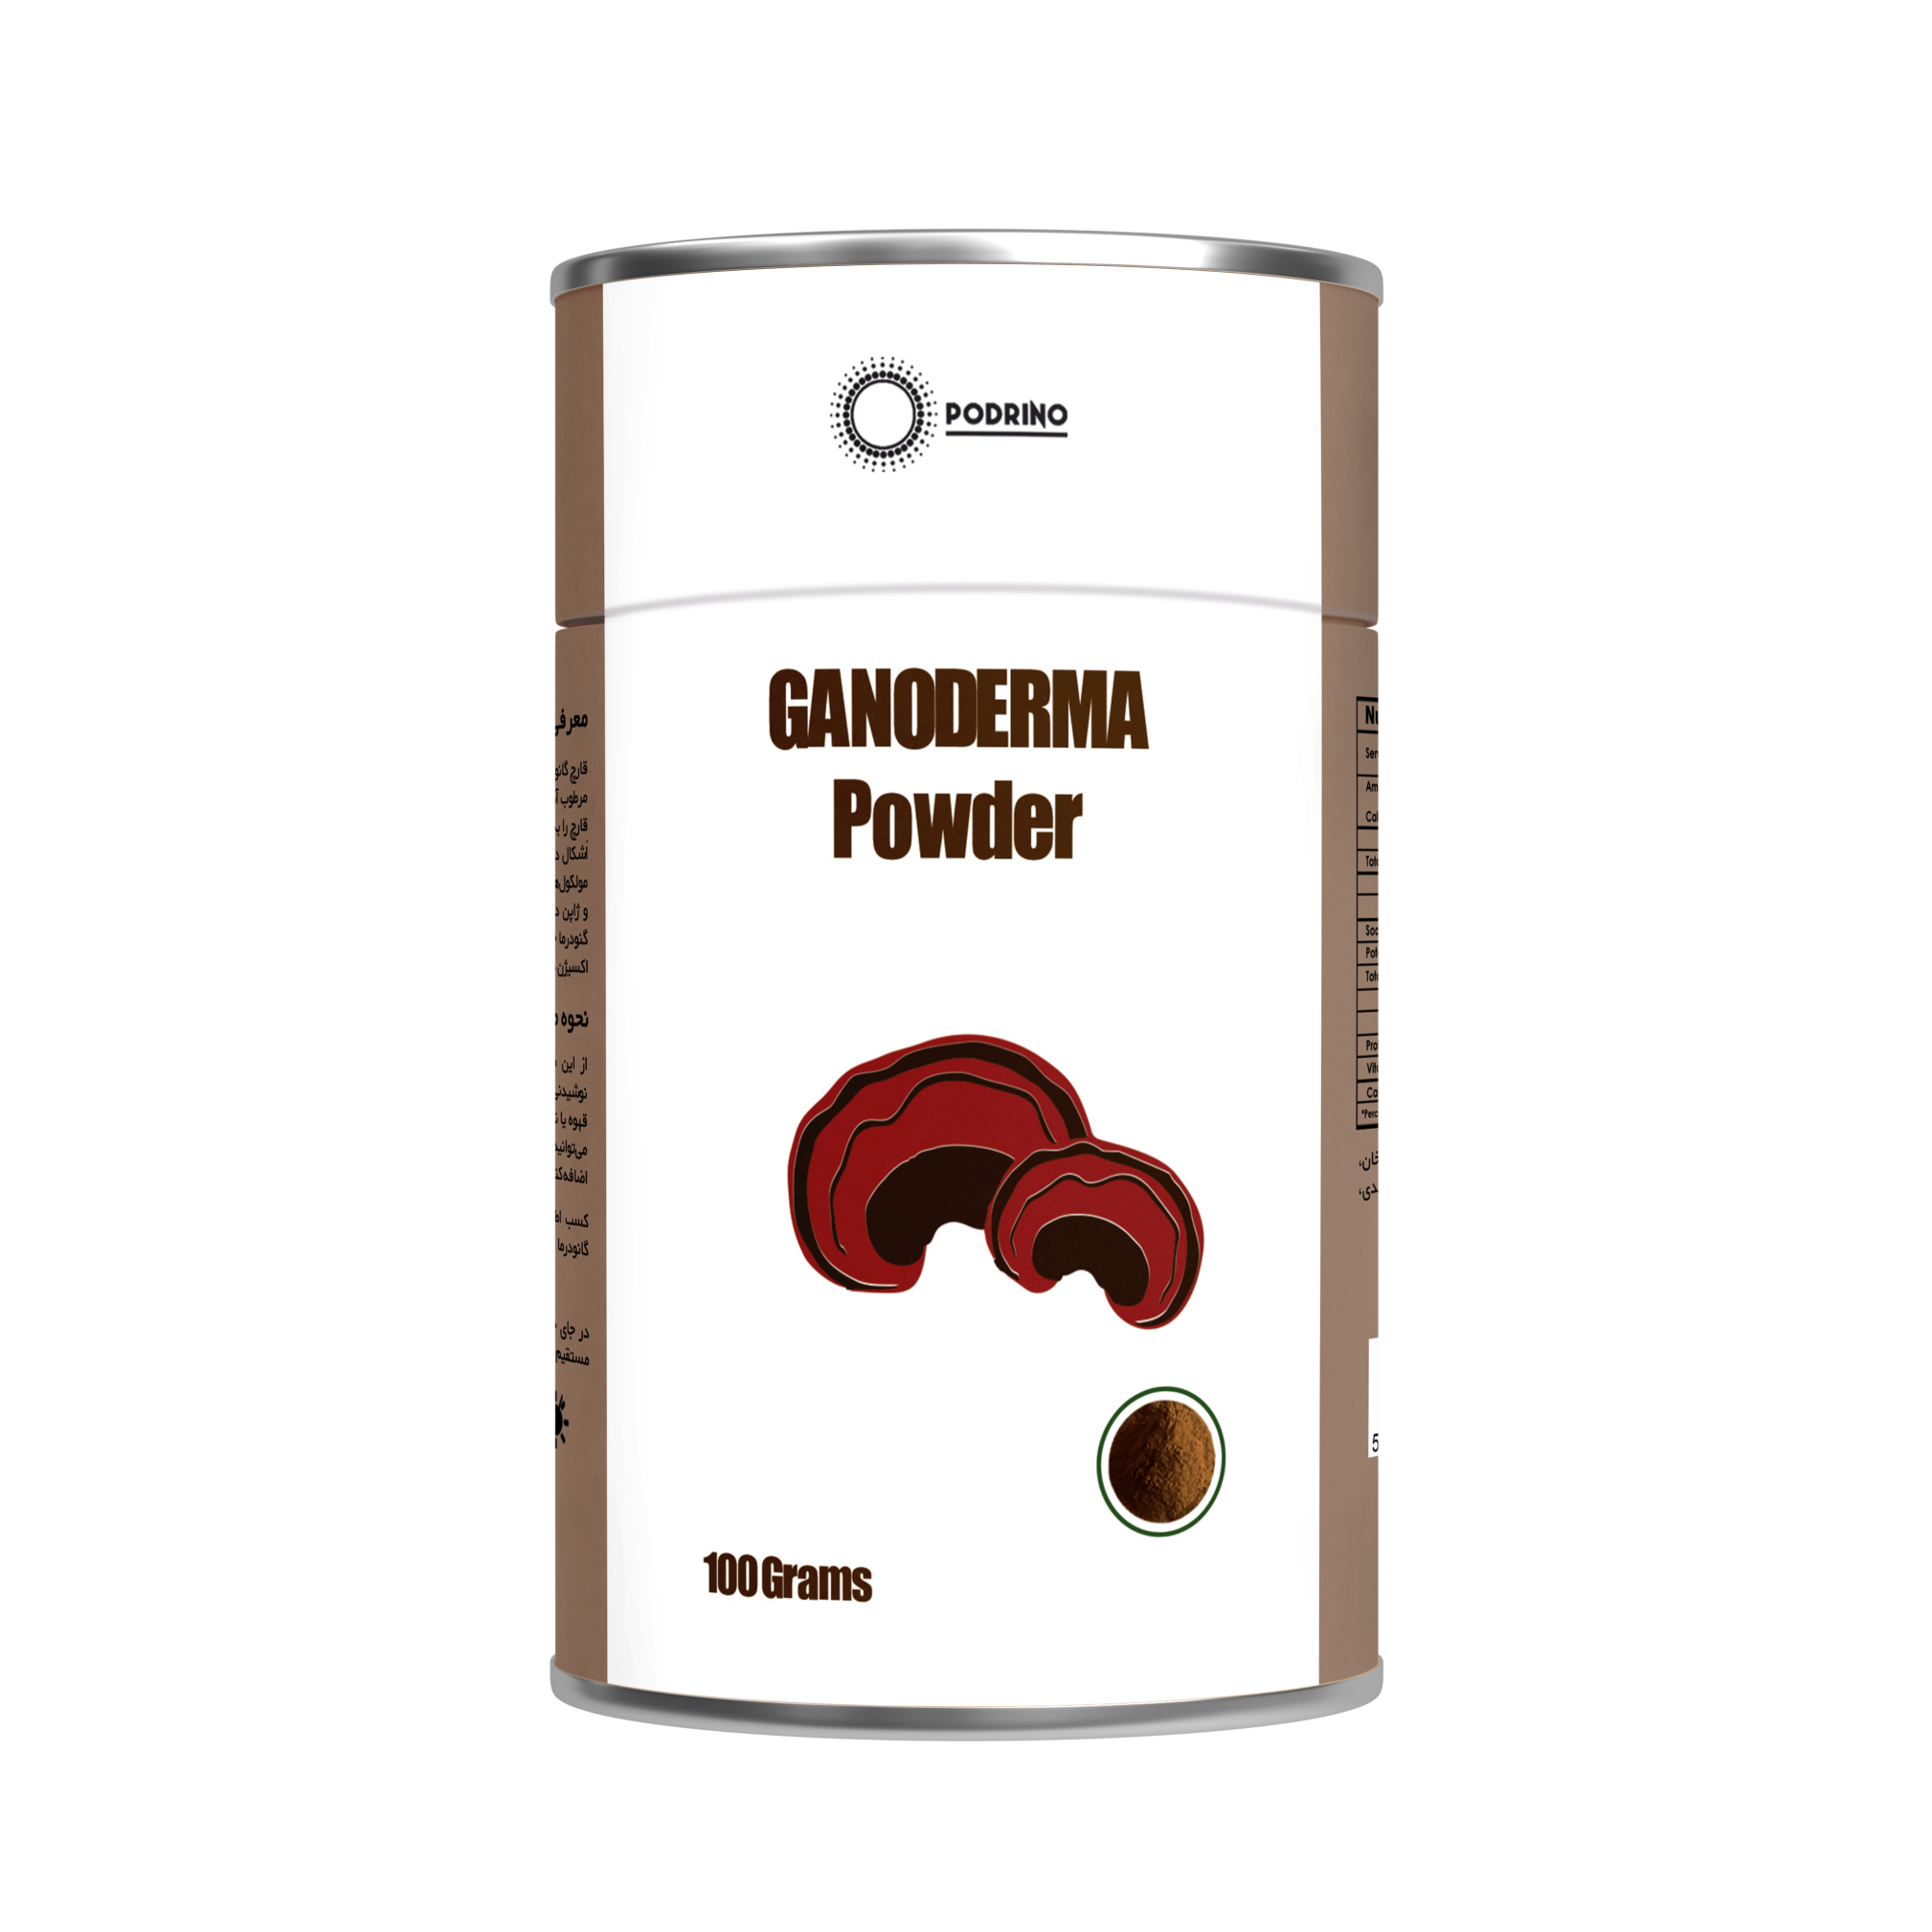  خرید عمده پودر عصاره قارچ گانودرما 